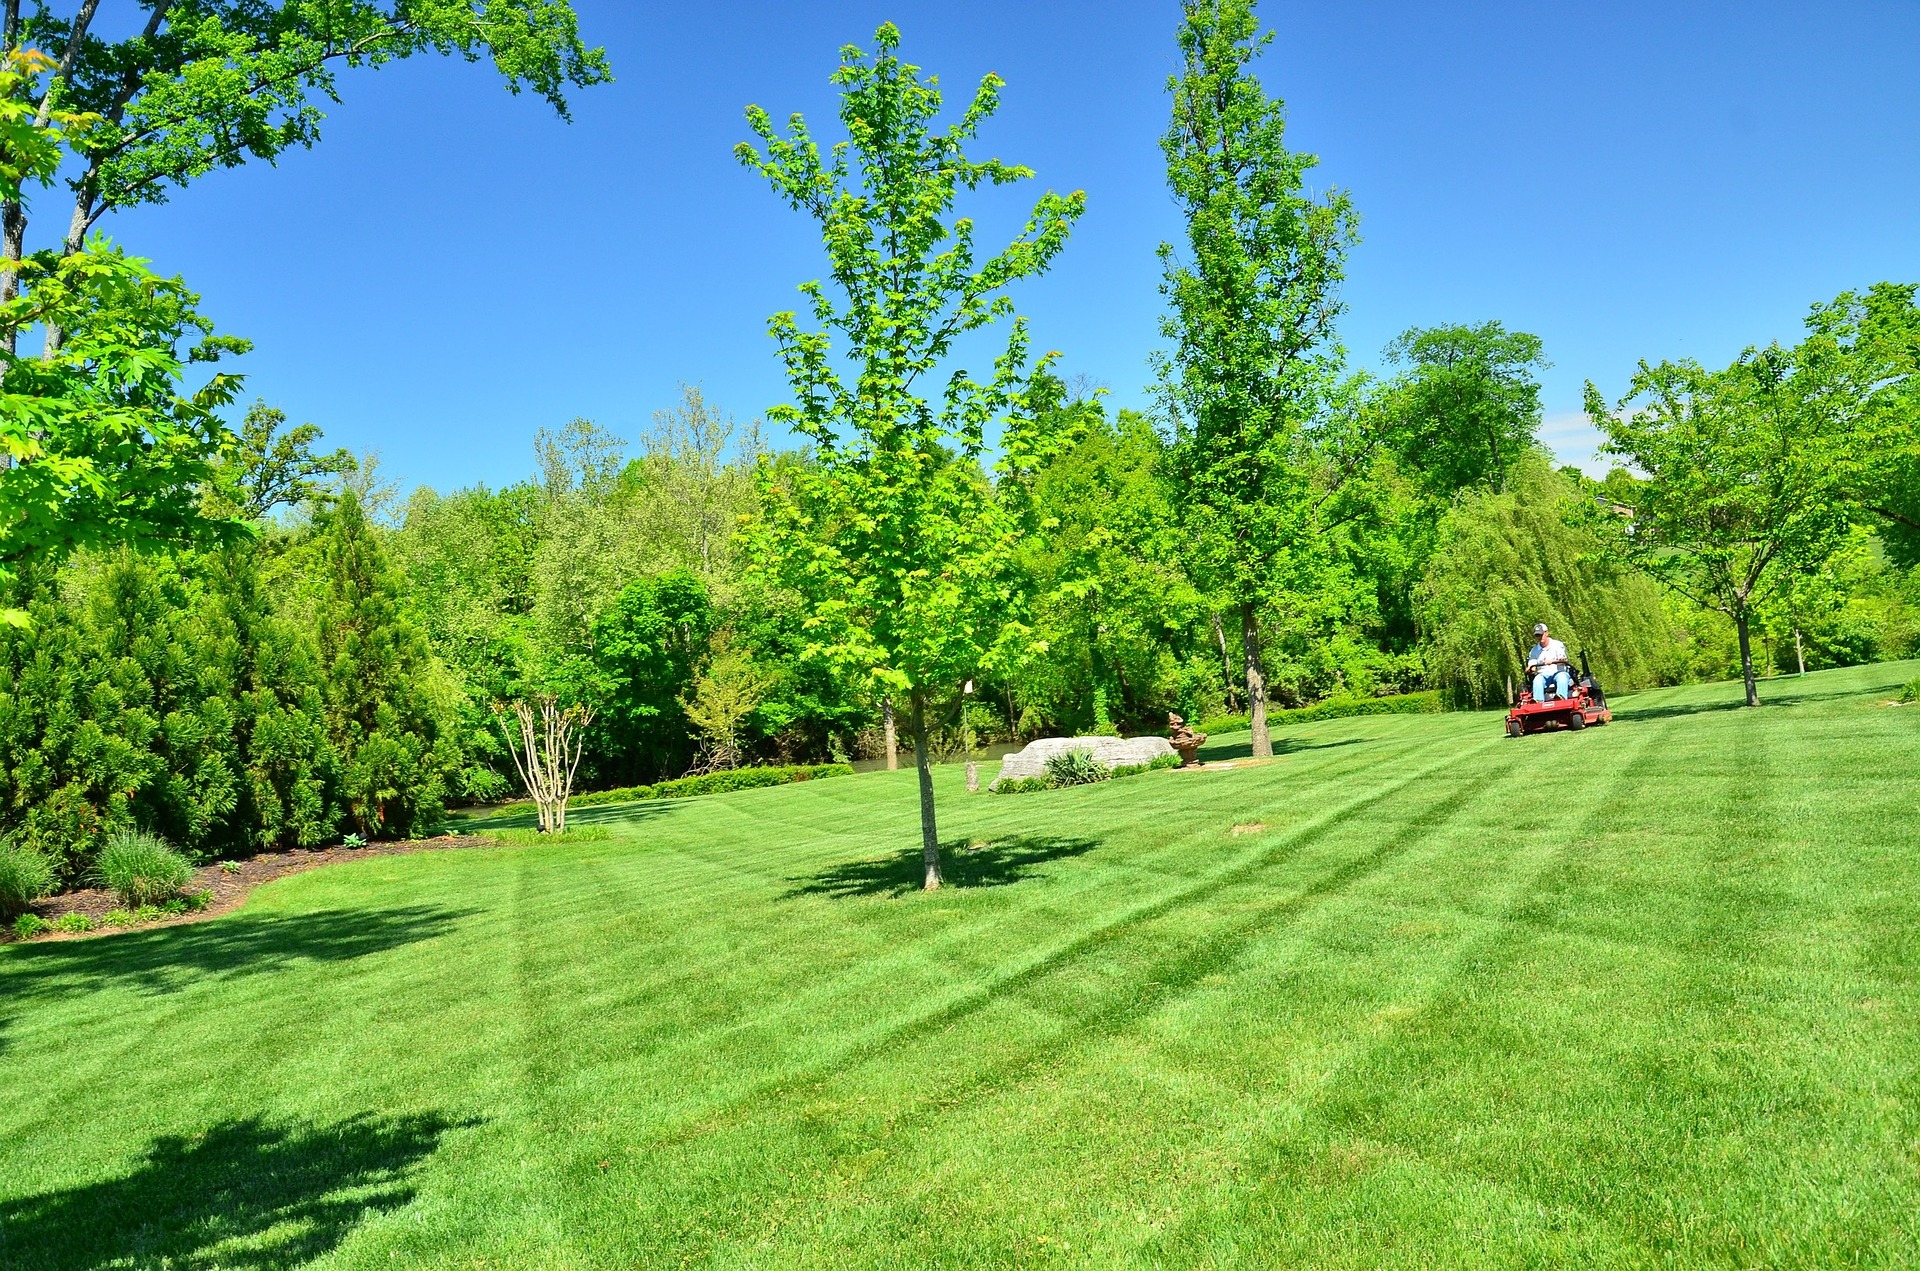 Manicured lawn. Photo courtesy of Pixabay.